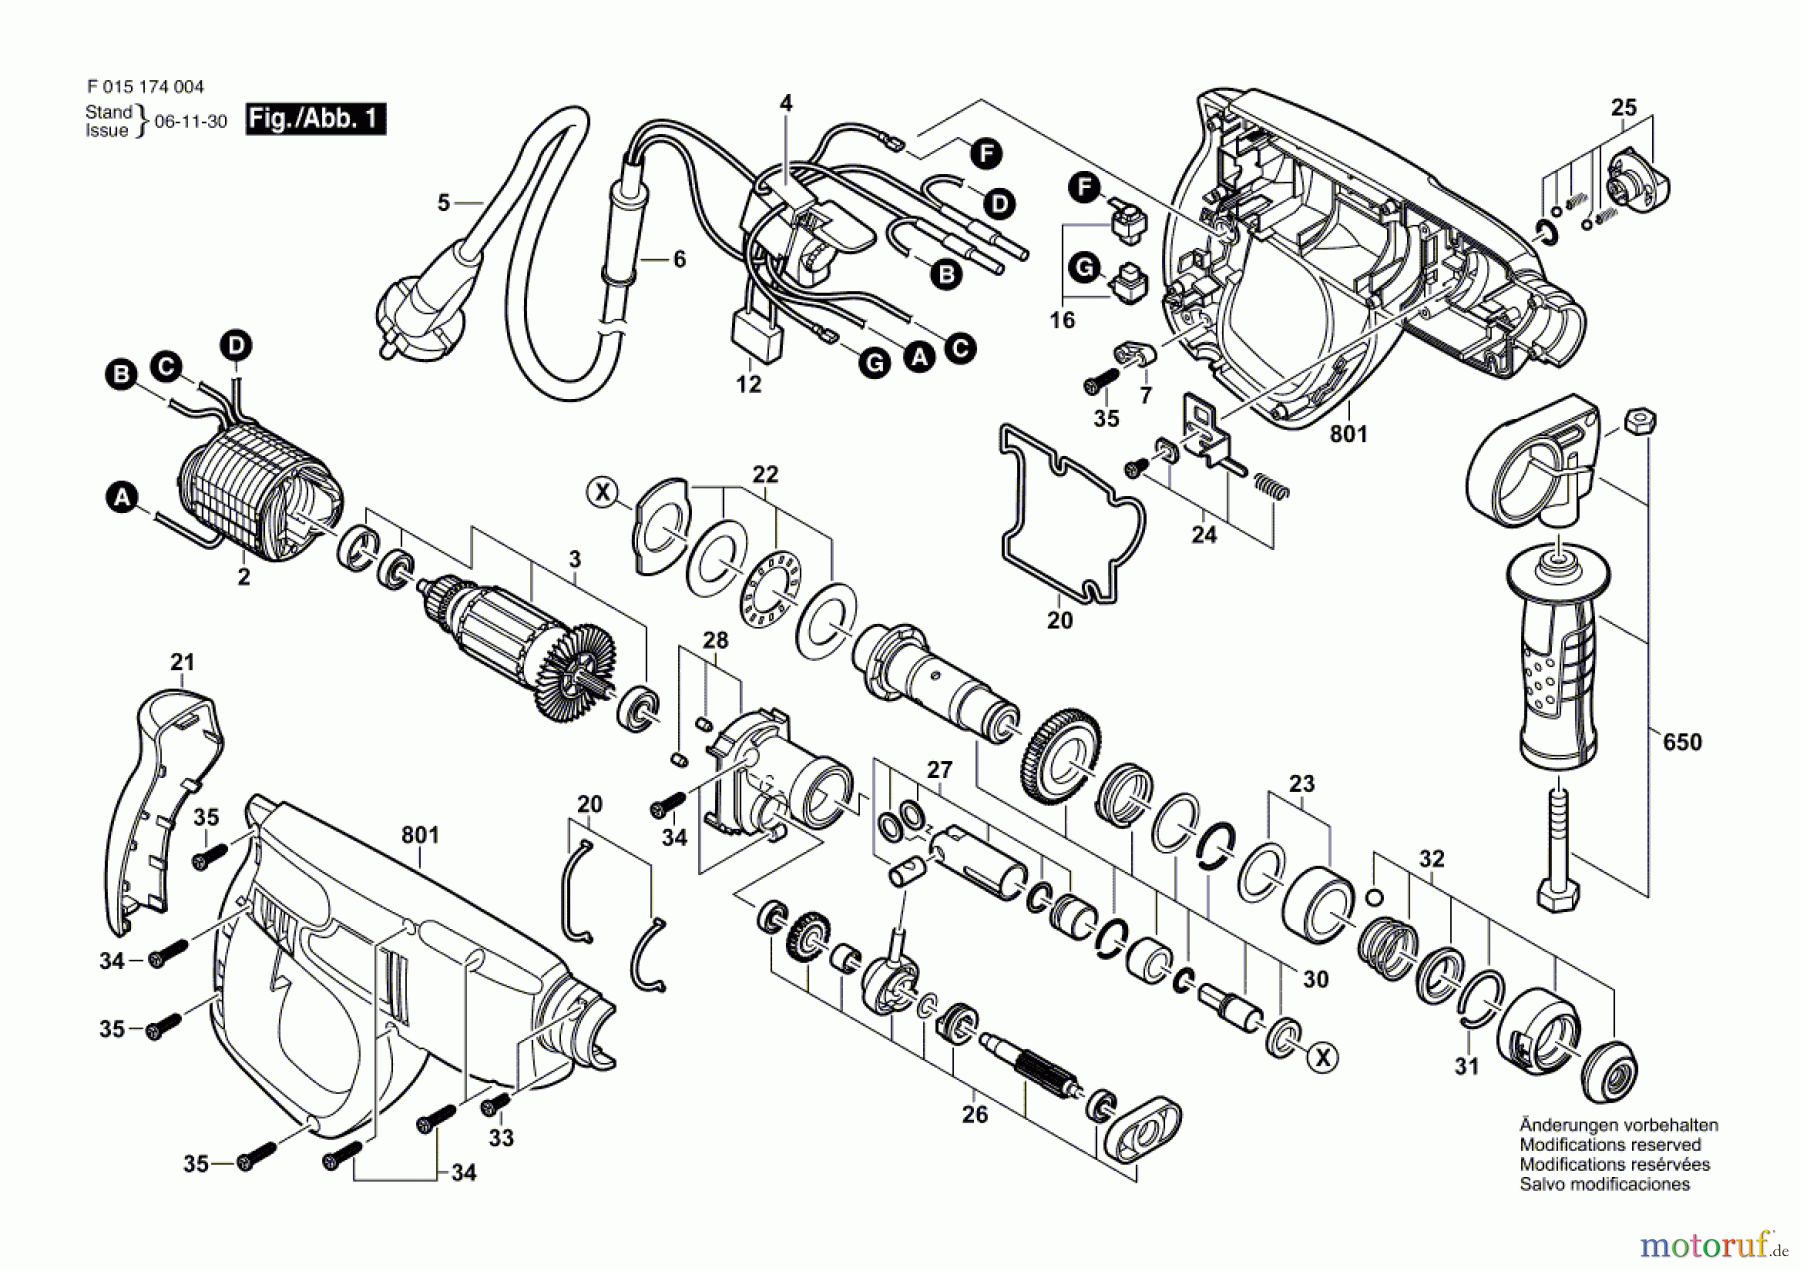  Bosch Werkzeug Bohrhammer 1735 Seite 1